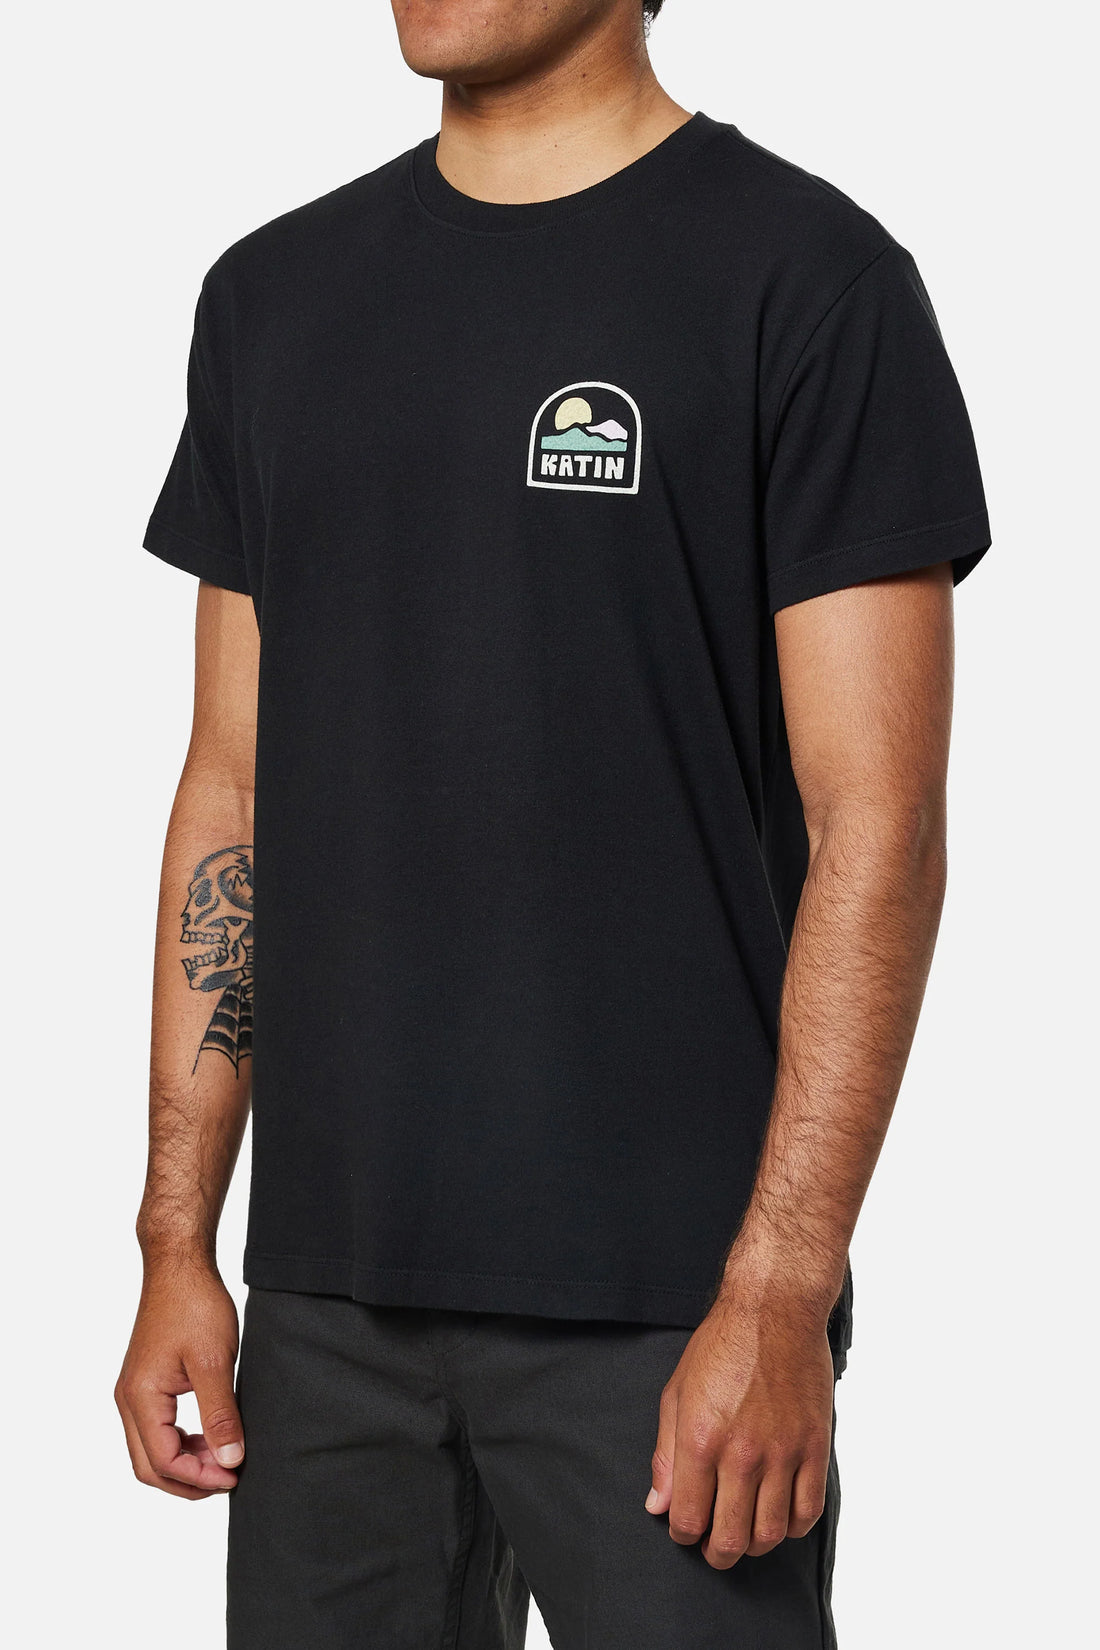 T-Shirt Ortega Noir Katin